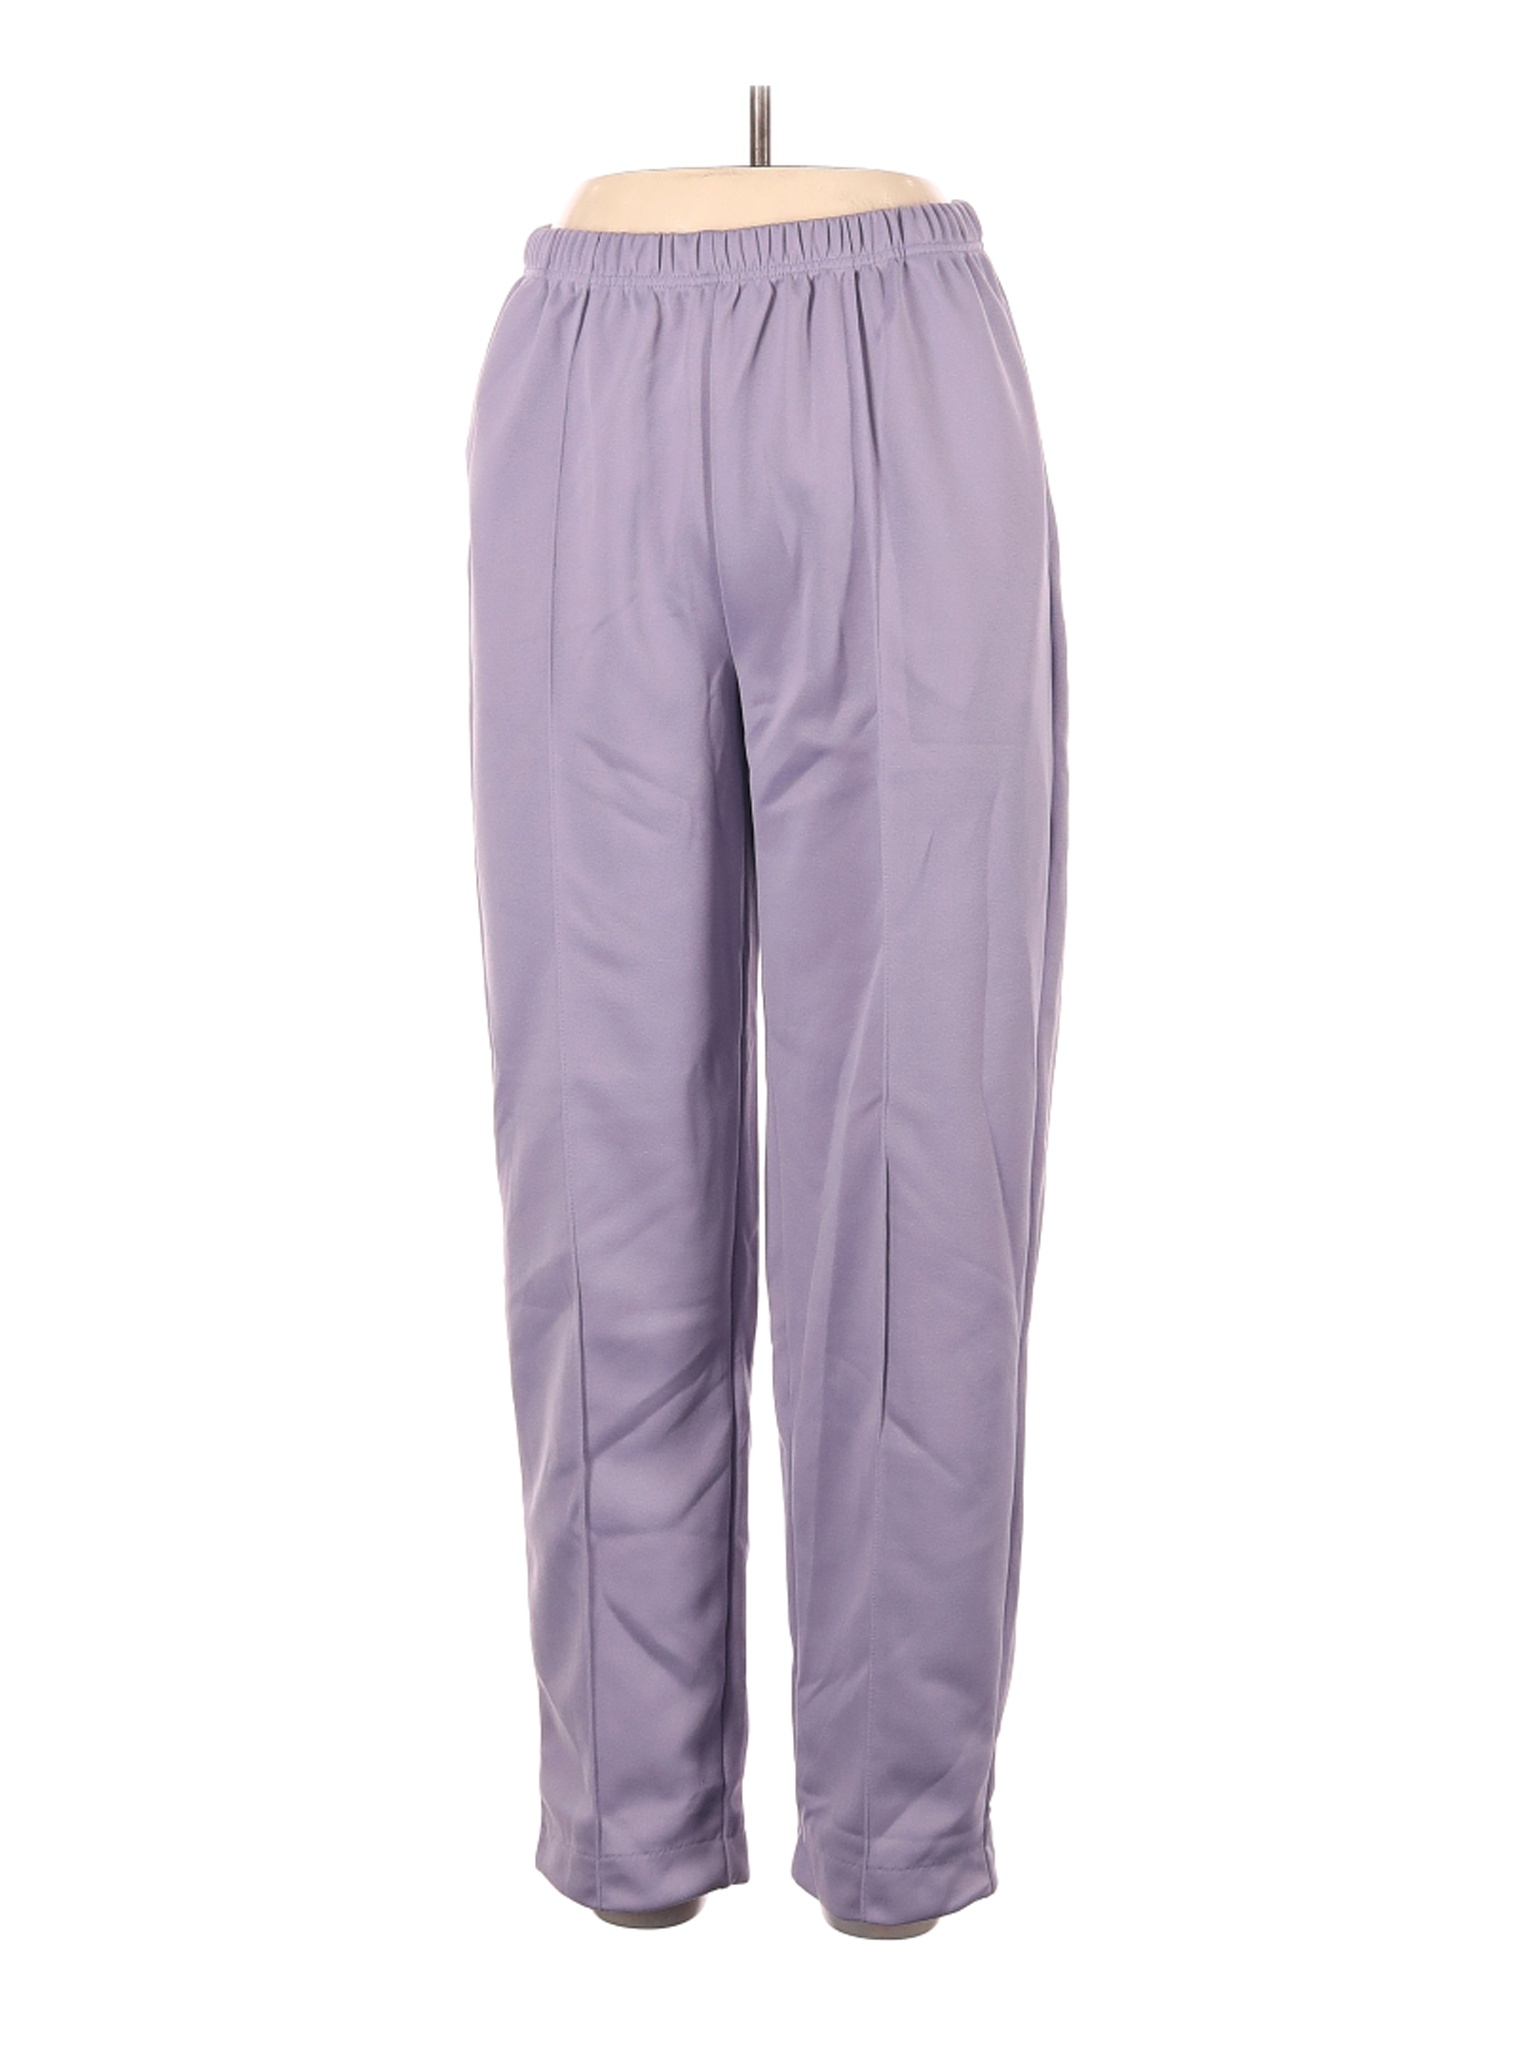 Blair Women Purple Dress Pants 12 Petites | eBay